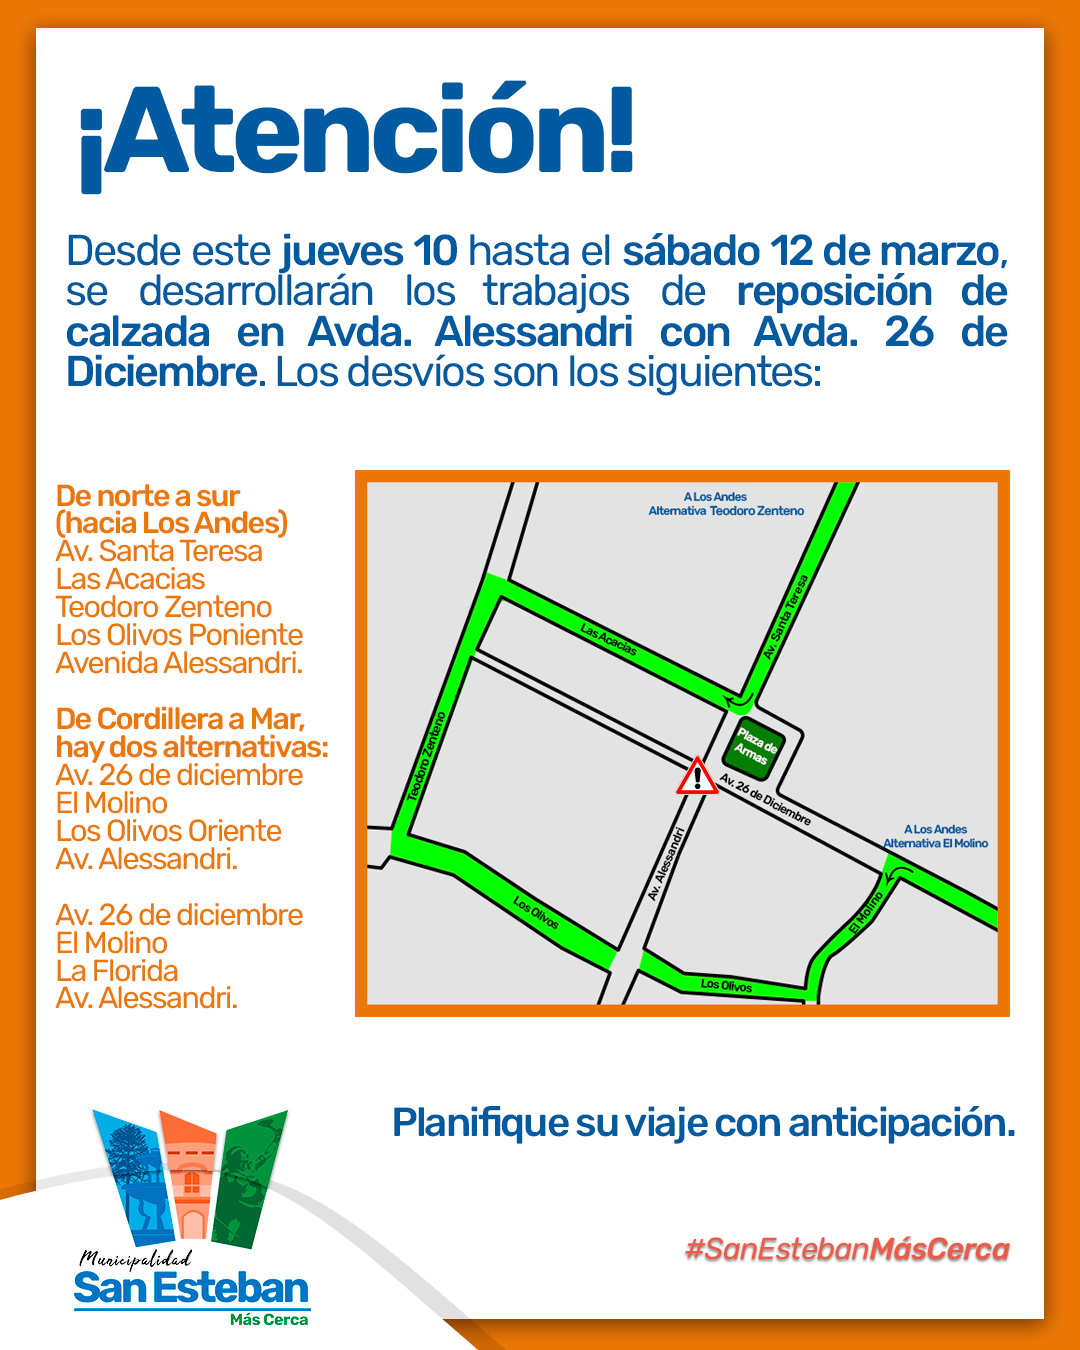 SAN ESTEBAN: Este jueves iniciarán los trabajos para renovar calzada en intersección de Avenidas Alessandri y 26 de diciembre en San Esteban